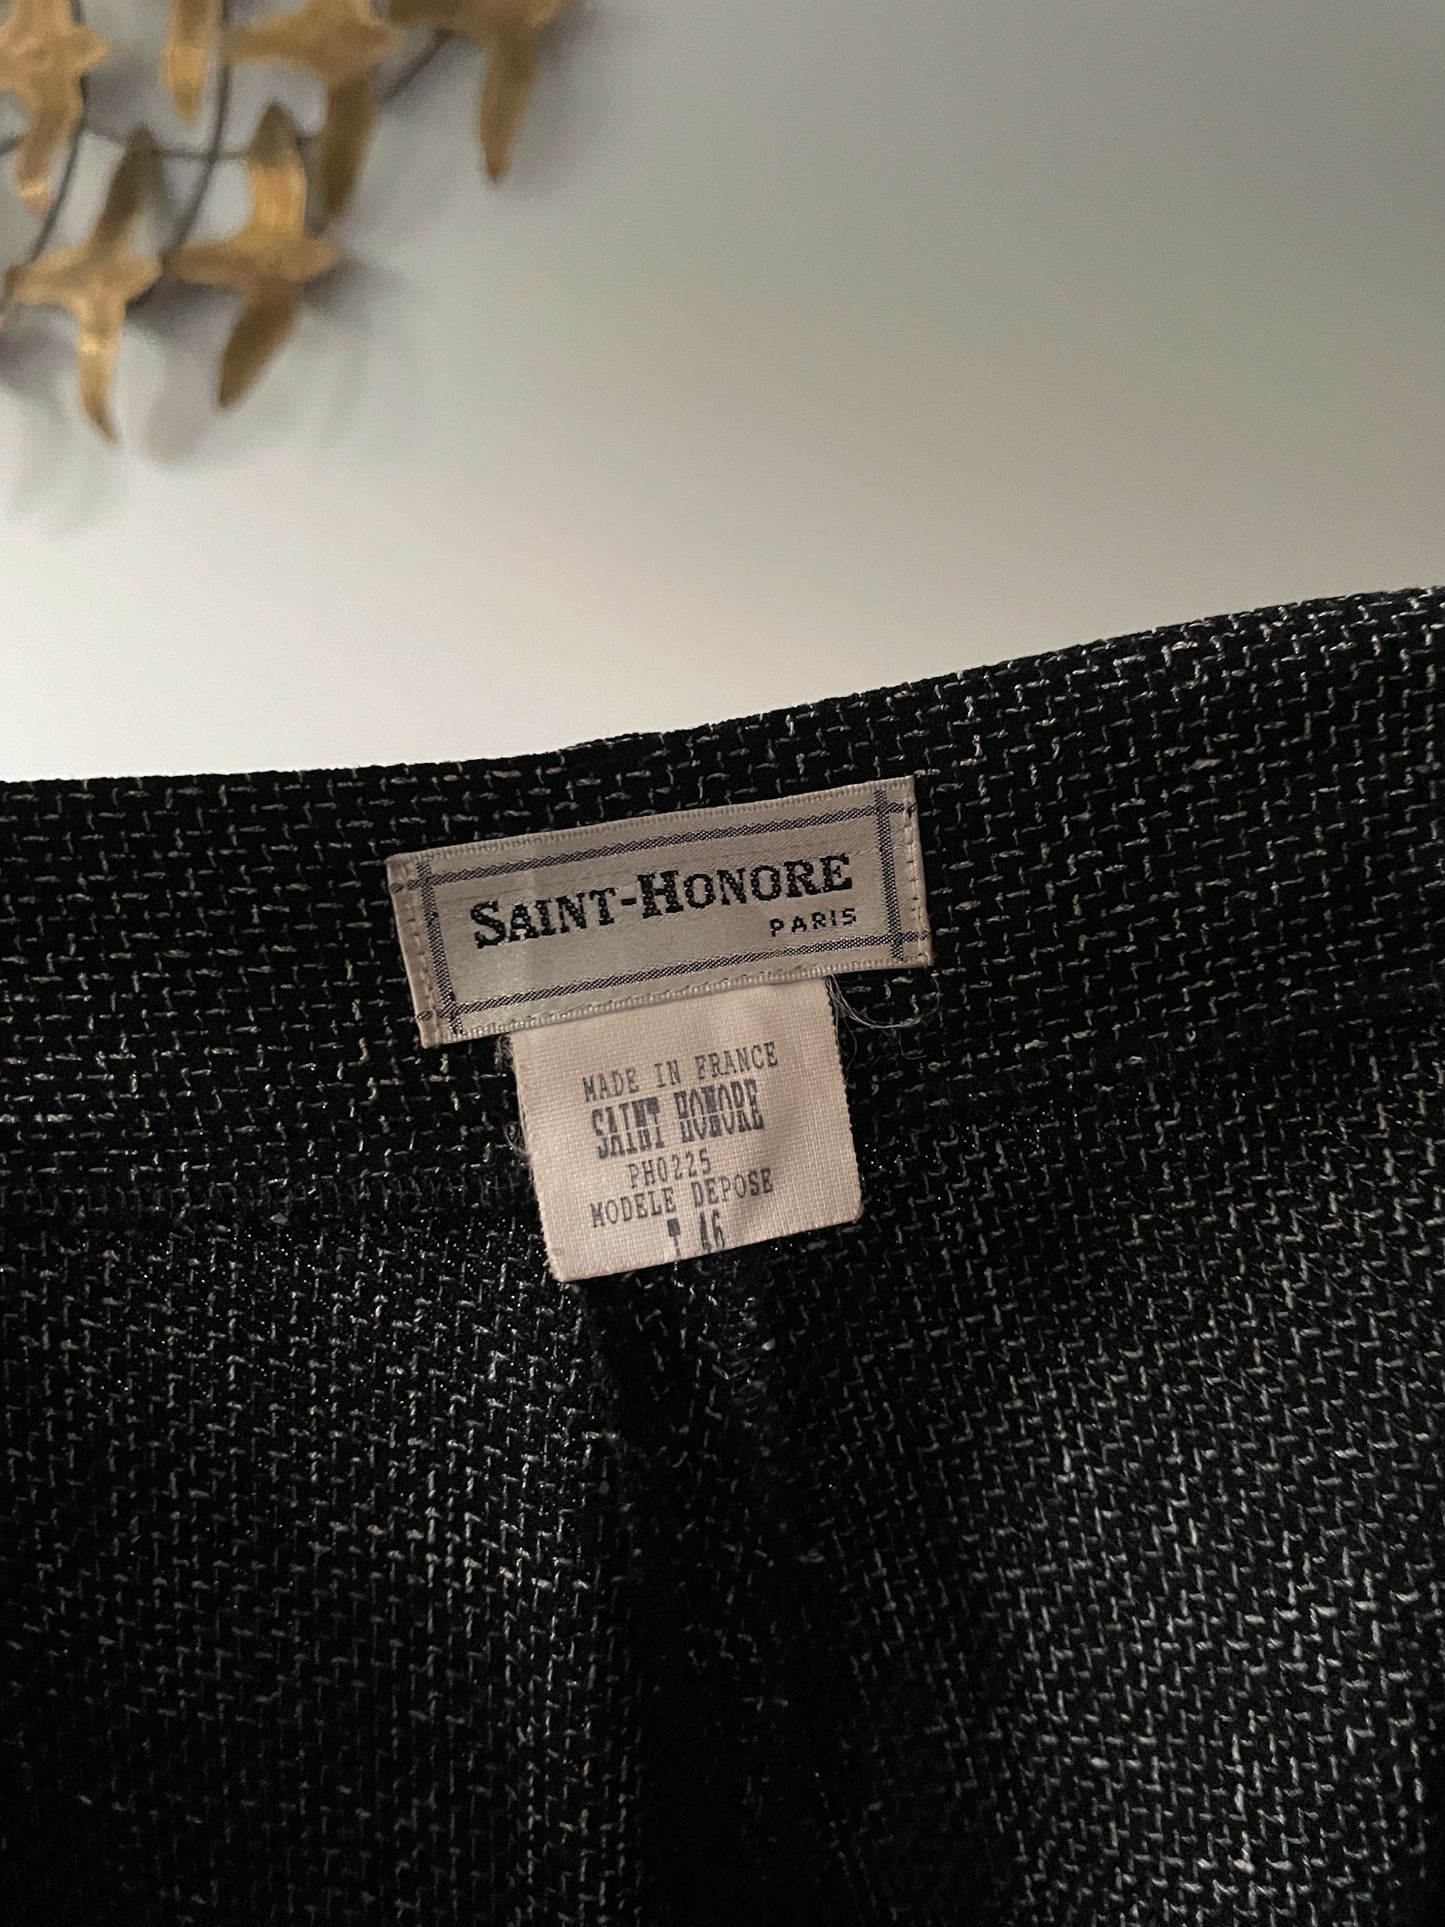 Saint-Honore Paris Black Woven Wide Leg Suit Trouser Pants - Size 10